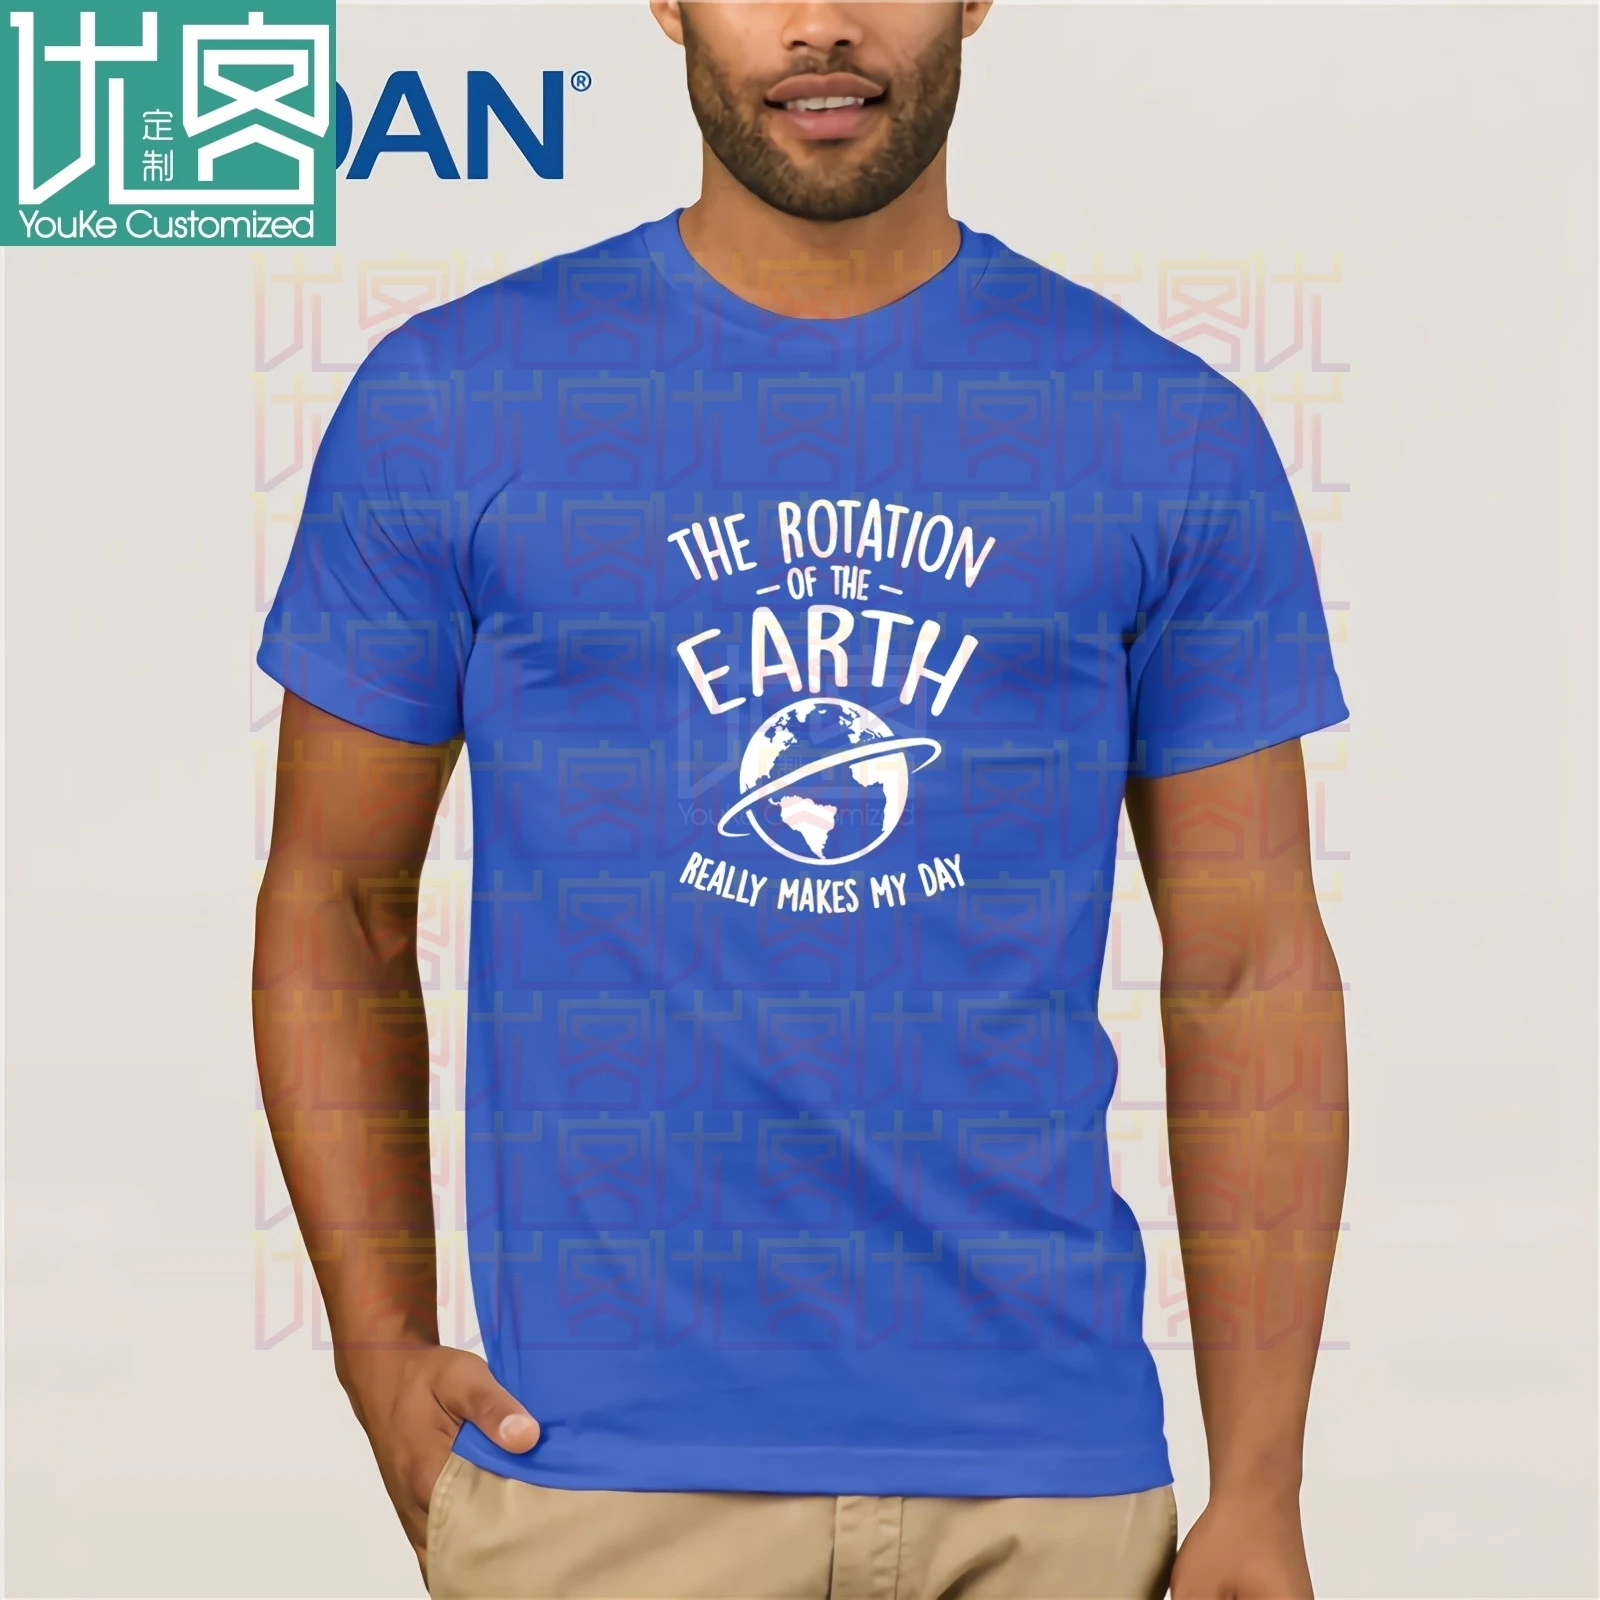 Oblačila Vrtenja Zemlje Res Naredi Moj Dan Prostora 4681 T-Shirt 2020 Herren Classic T-Shirt Kratek Rokav Tee